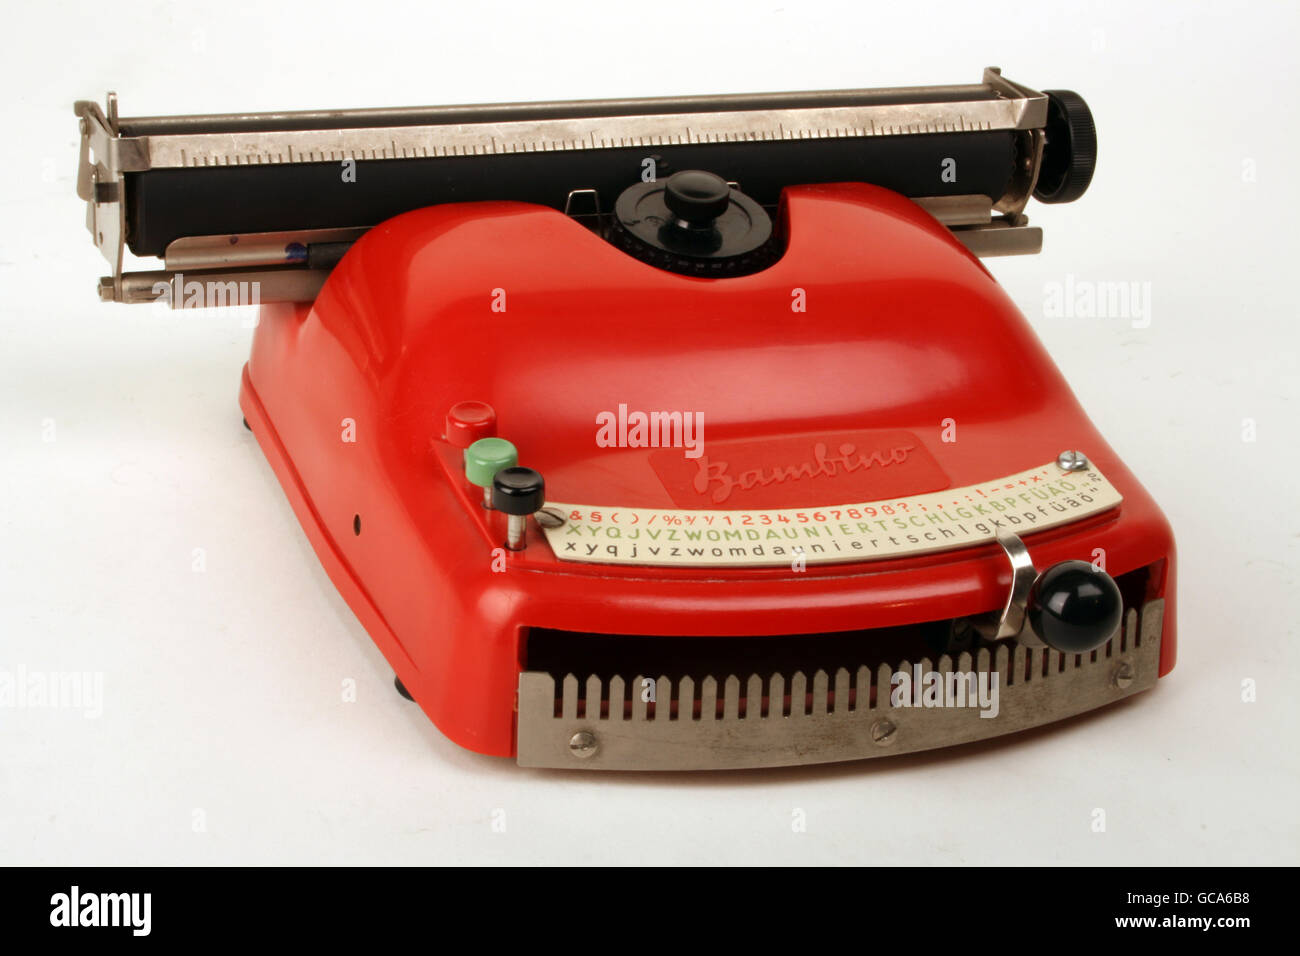 Giocattoli, macchina da scrivere per bambini 'Bambino', realizzata